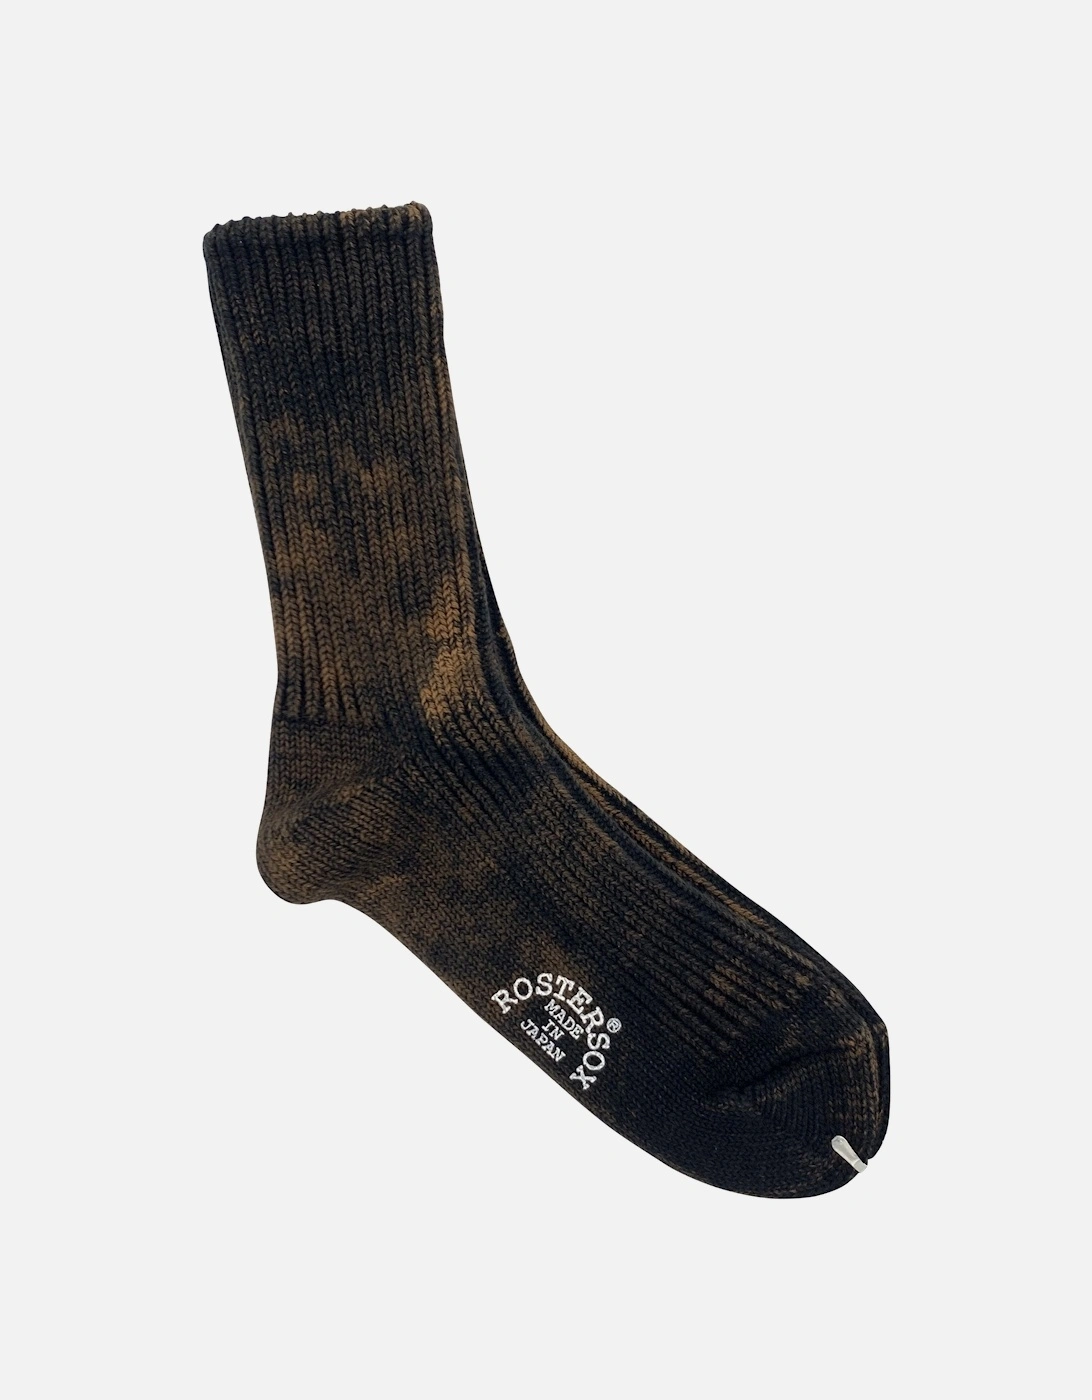 Rostersox's BA Socks - Black, 4 of 3